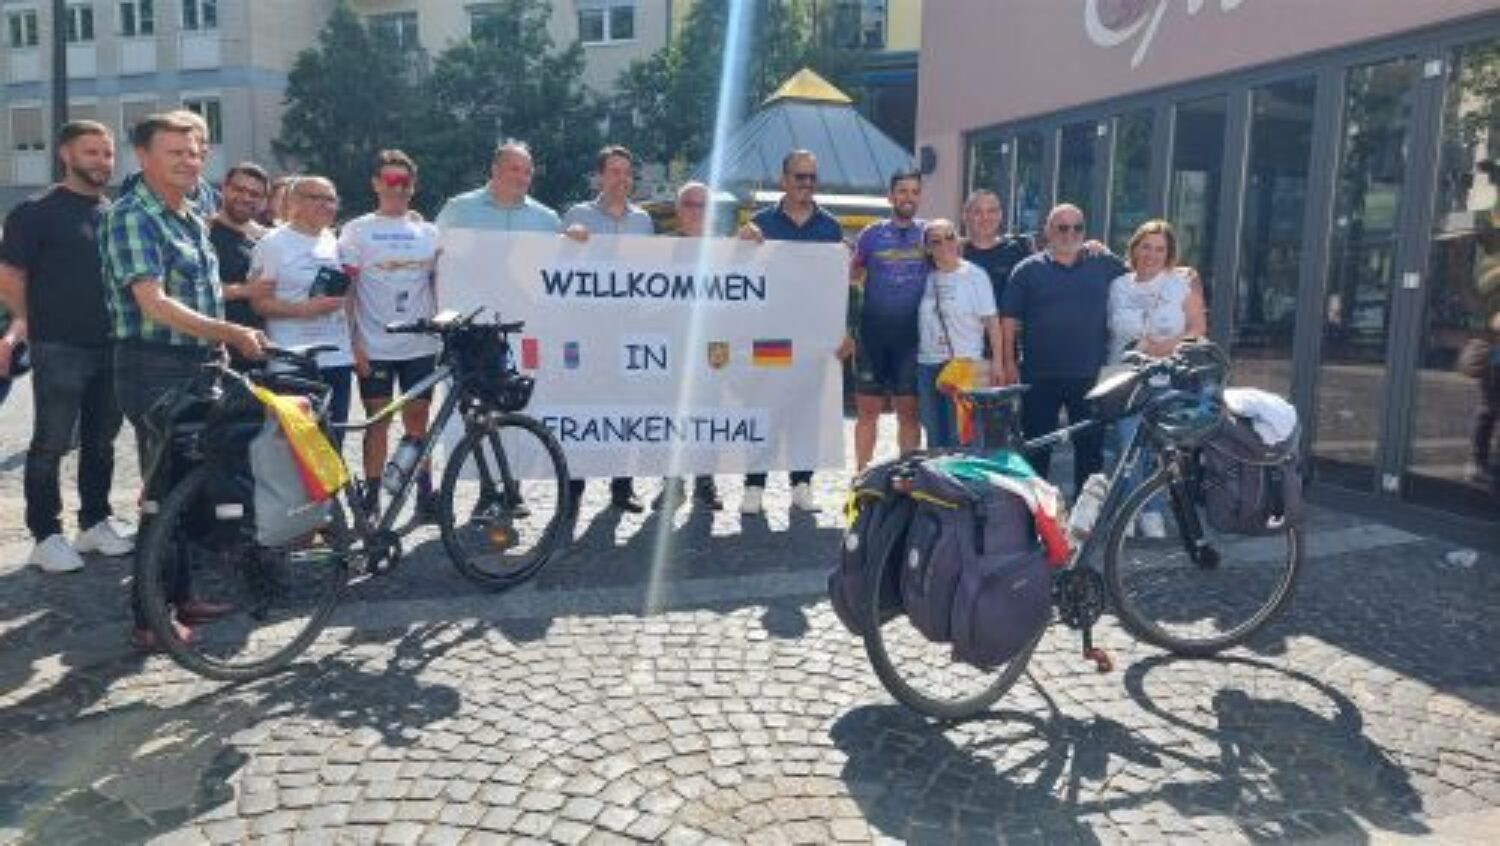 Frankenthal – 2.000 Kilometer für das Thema Organspende – Oberbürgermeister Meyer empfängt italienische Radfahrer